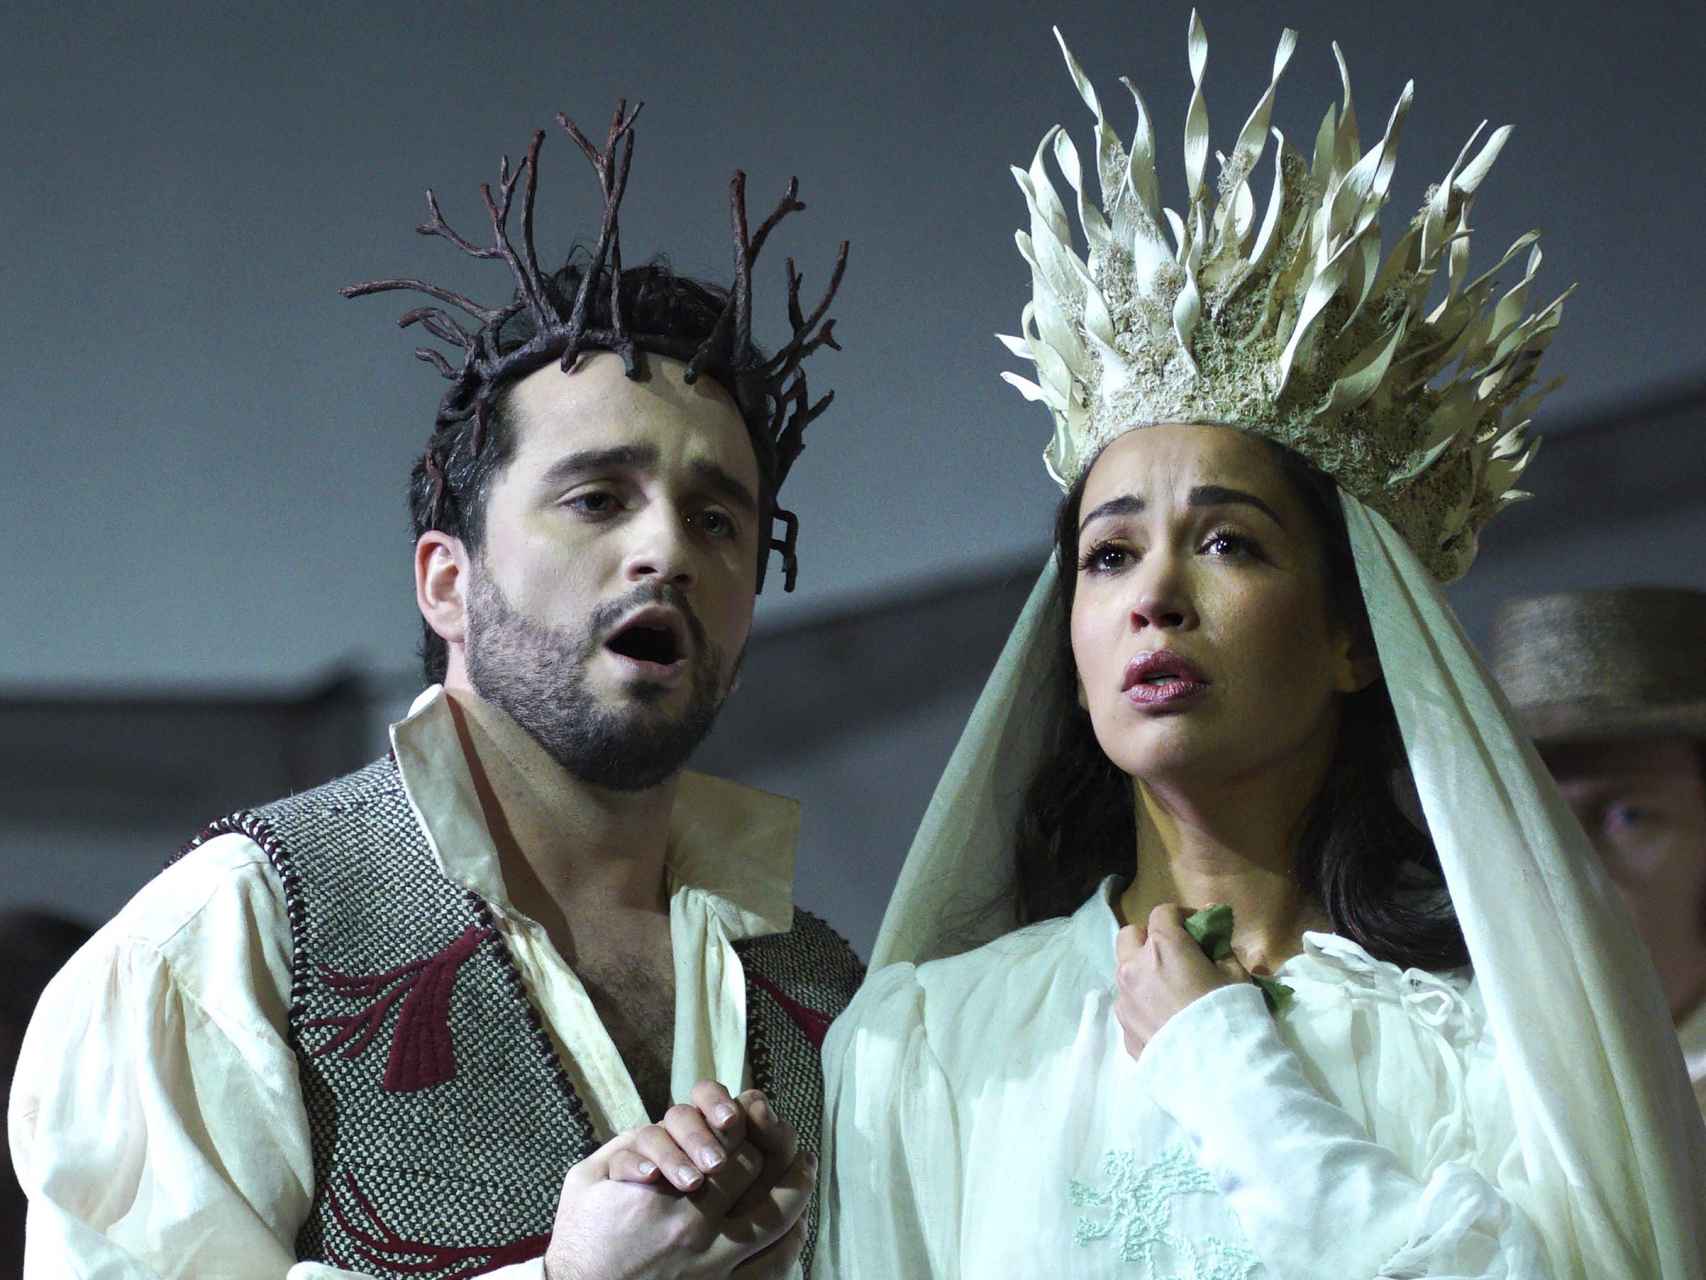 La soprano Nadine Sierra (Amina) y Xabier Anduaga (Elvino) en la representación de 'La Sonnanbula', de Vincenzo Bellini.